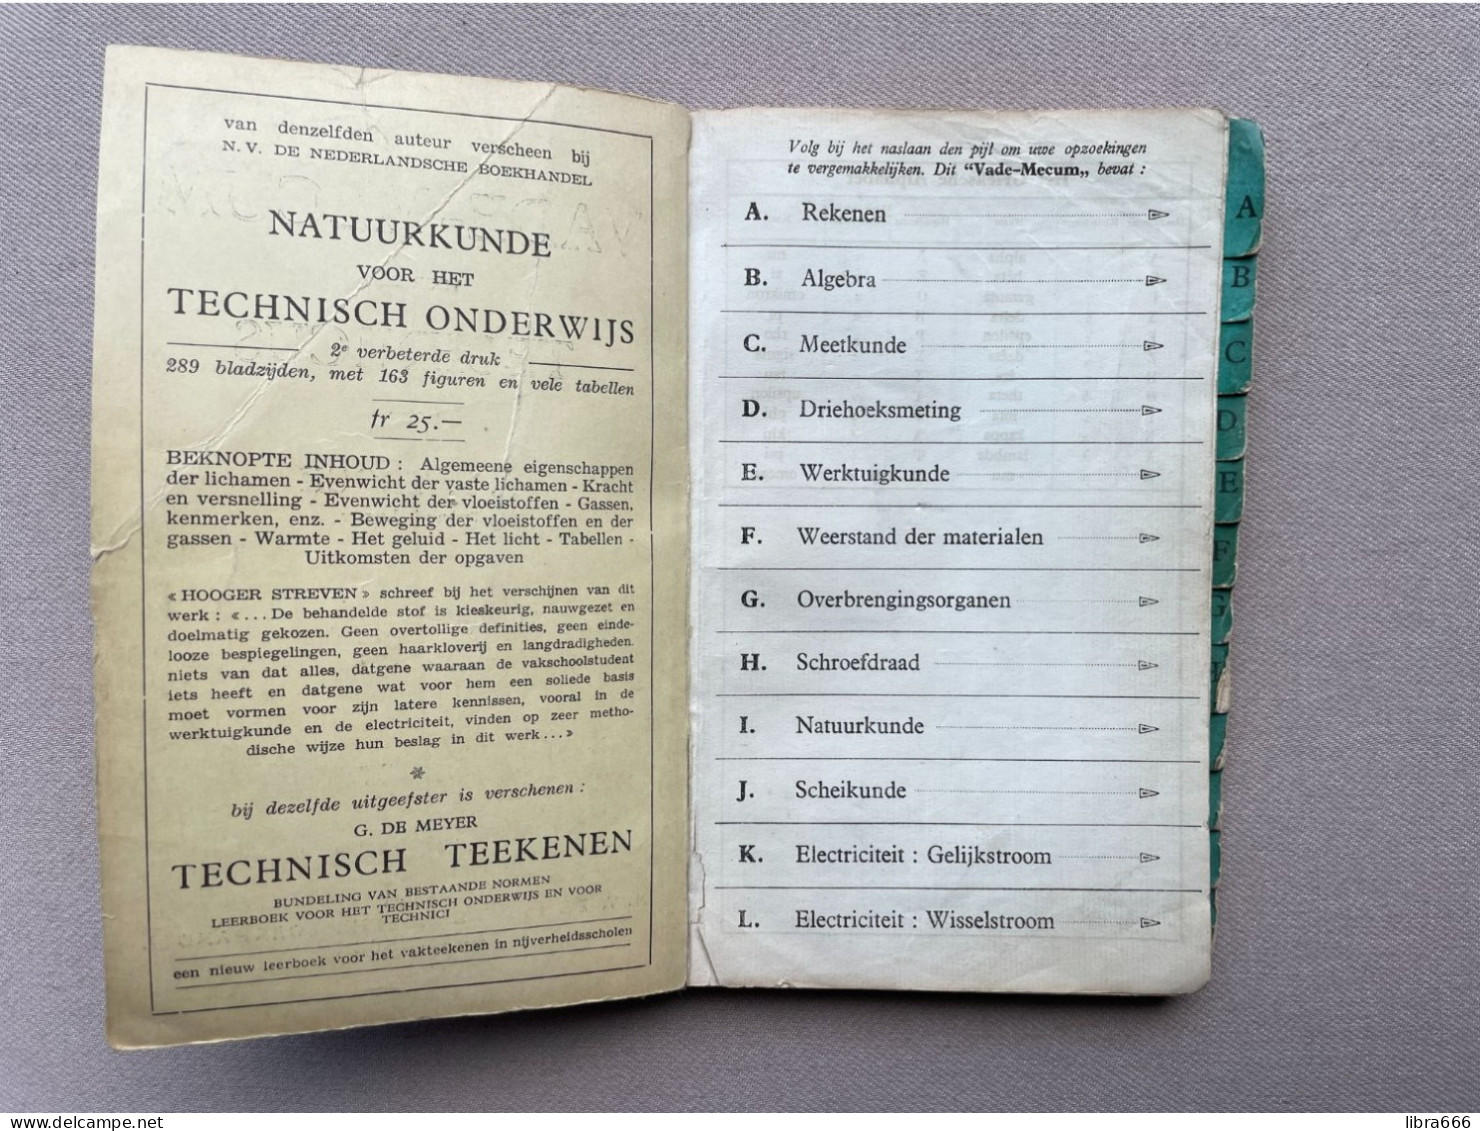 VADE-MECUM Voor Den TECHNICUS - A.F. TROCH 1942 - N.V. De Nederlandsche Boekhandel Antwerpen - 180 Pp. - 19,5 X 13 Cm. - Practical